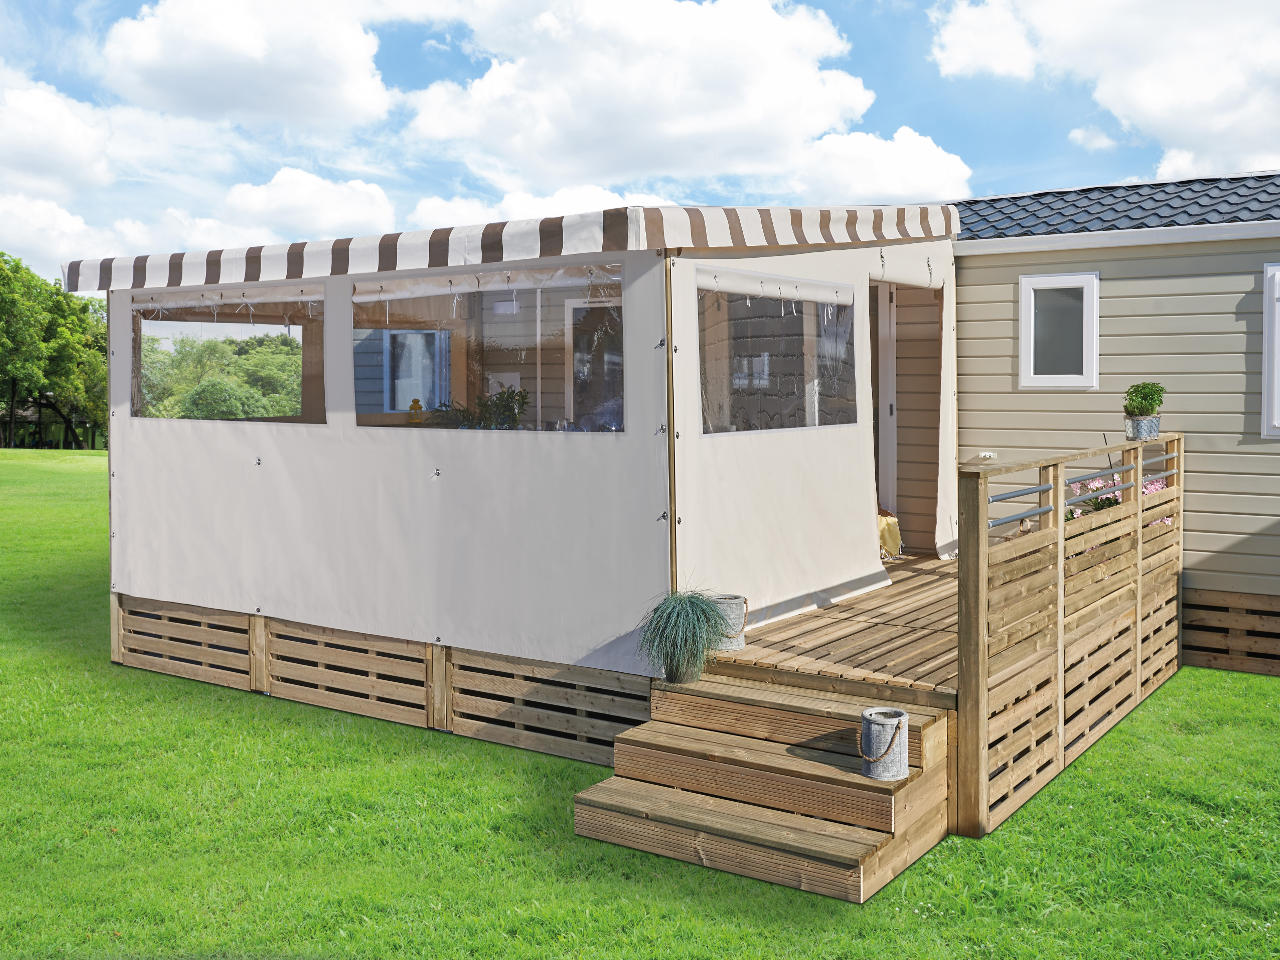 Toiles PVC Serge Ferrari pour côtés et façade terrasse bois mobil-home